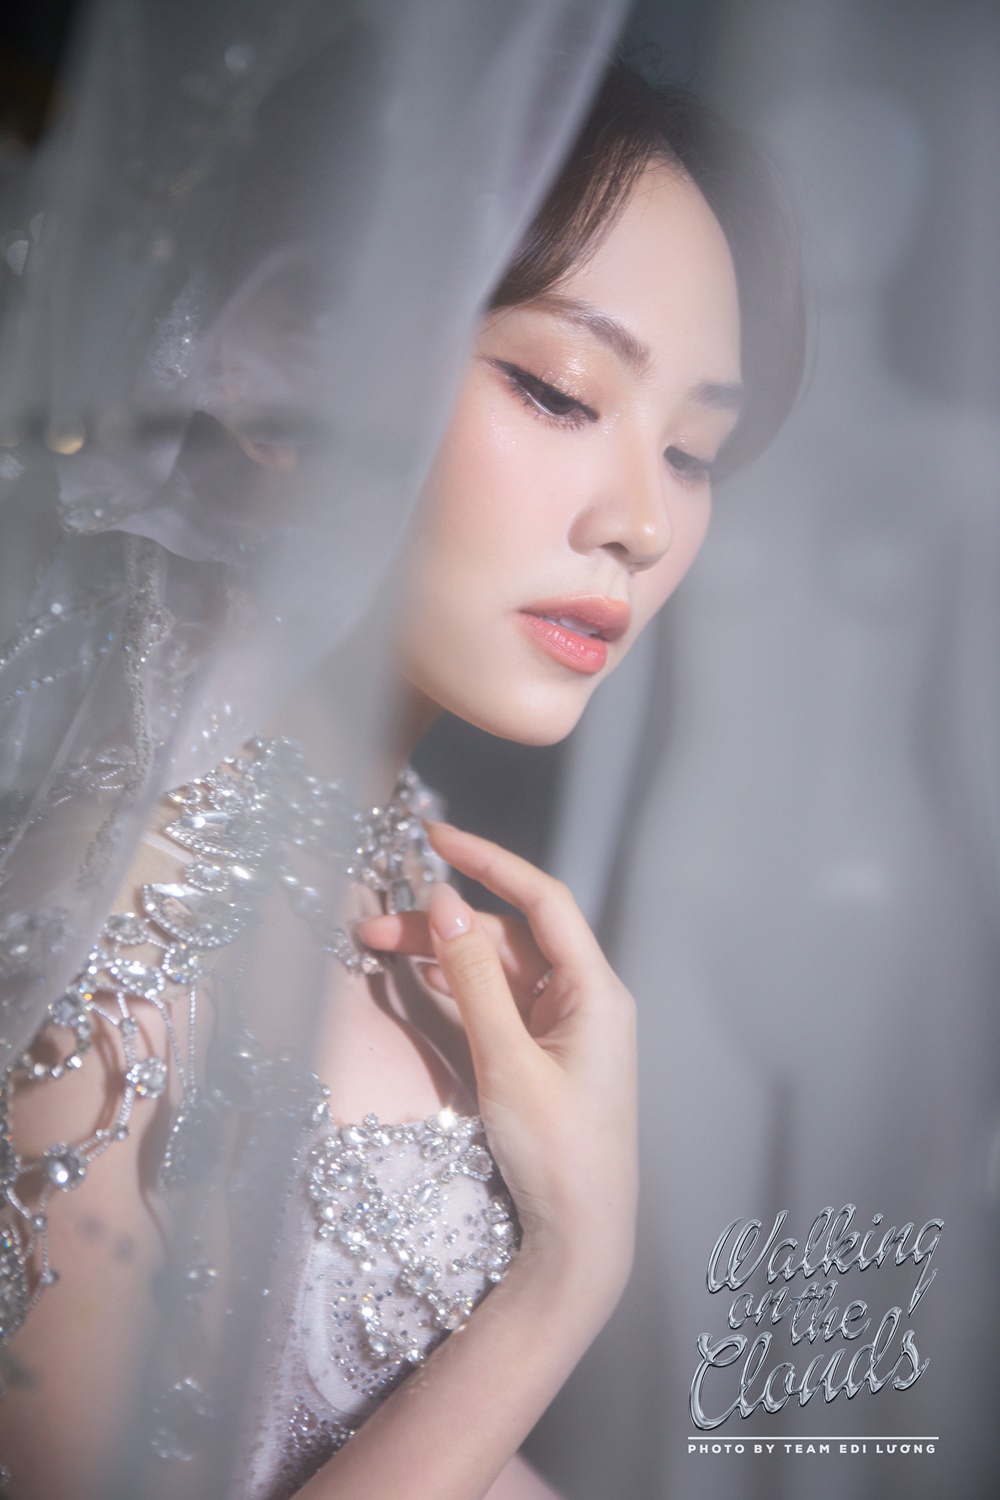 Miss World tiếp tục dời lịch, Hoa hậu Mai Phương bỗng tung loạt ảnh diện váy cưới đẹp như mơ - ảnh 2